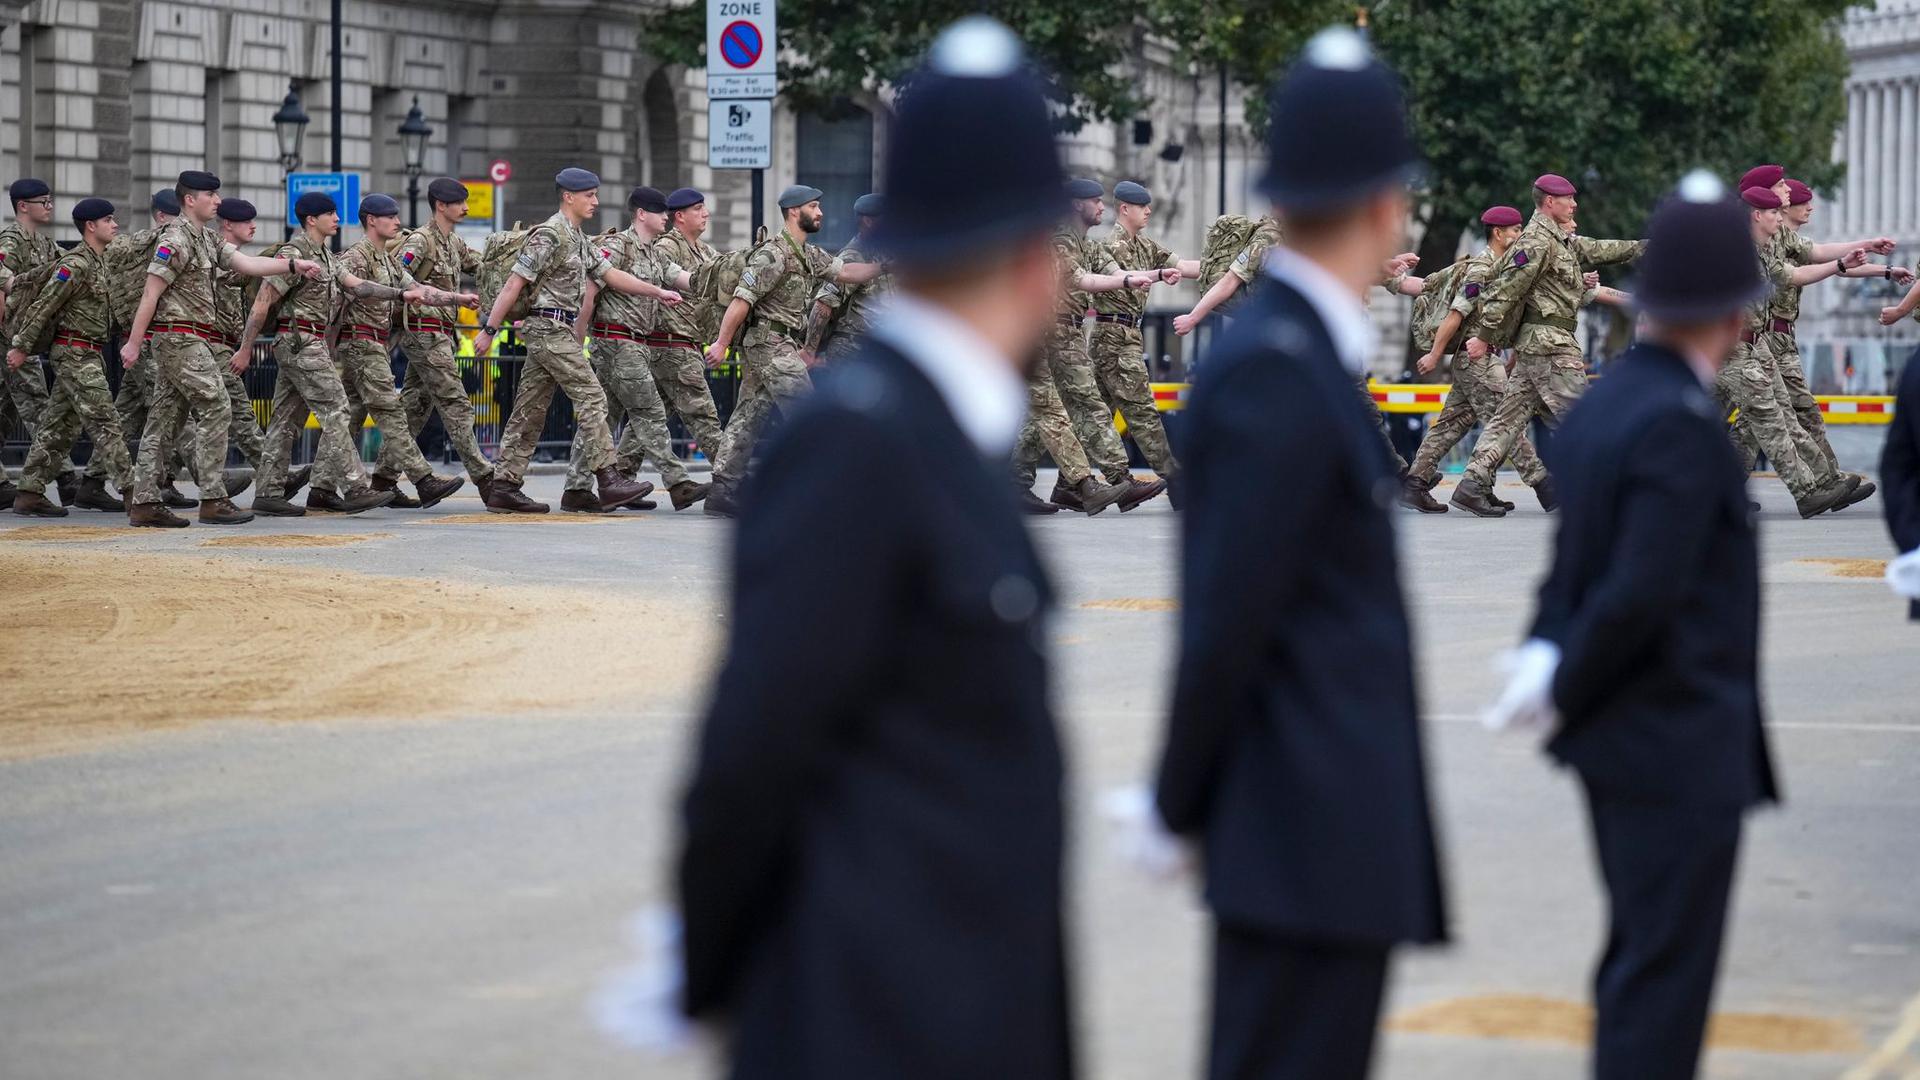 Zum Staatsbegräbnis für Elizabeth II. werden Hunderttausende Menschen auf den Straßen Londons erwartet.